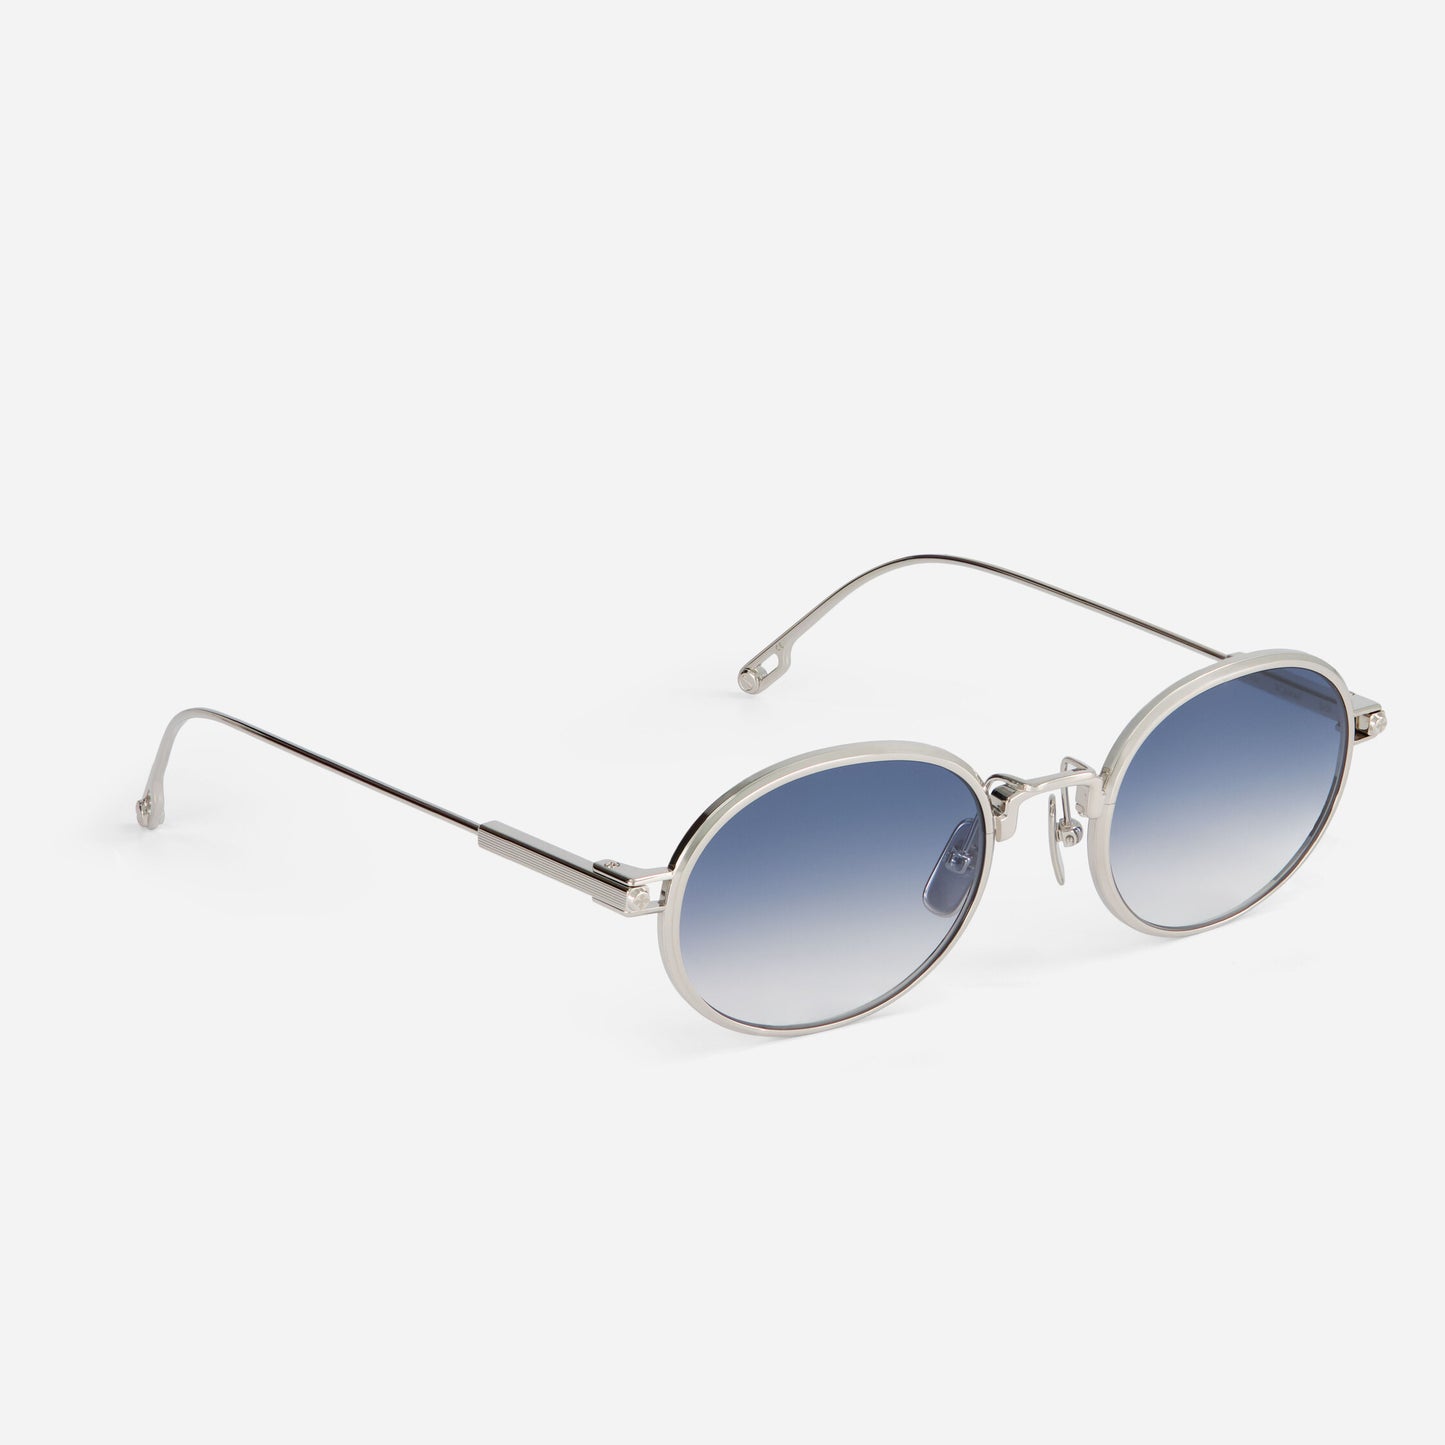 Sunglasses - Acamar S101 I Sato 